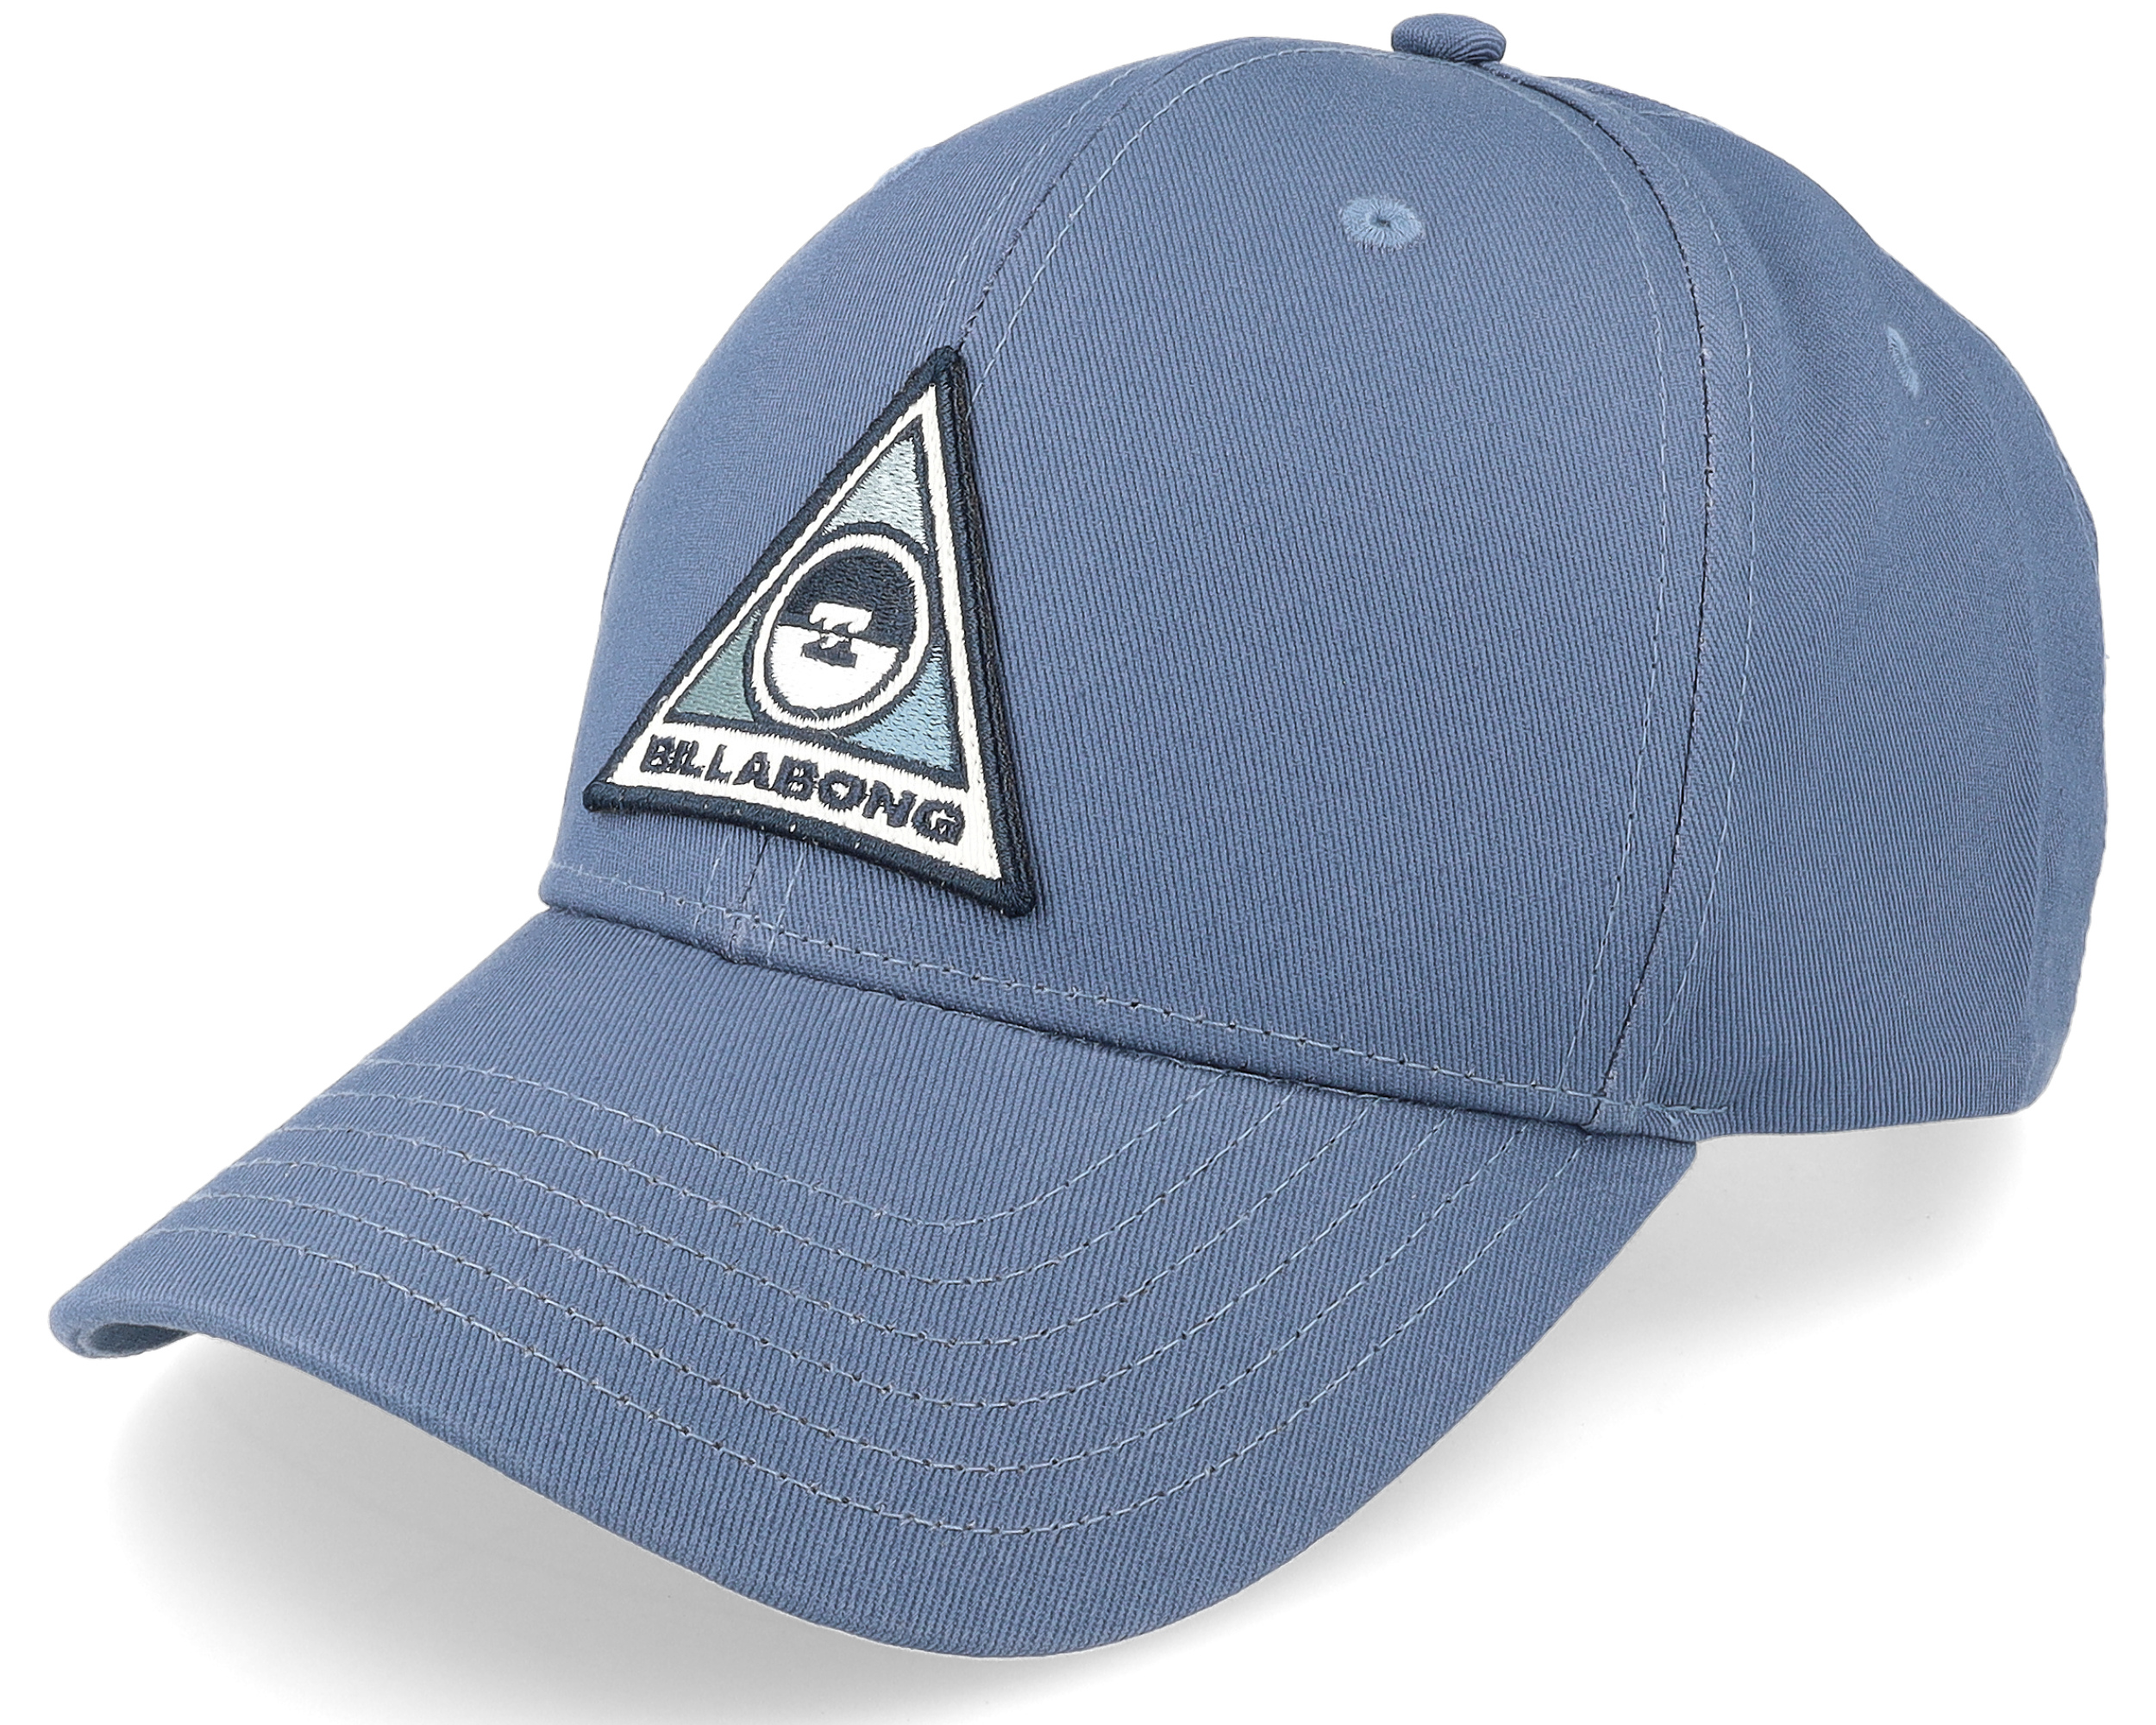 Walled Washed Blue Adjustable - Billabong cap